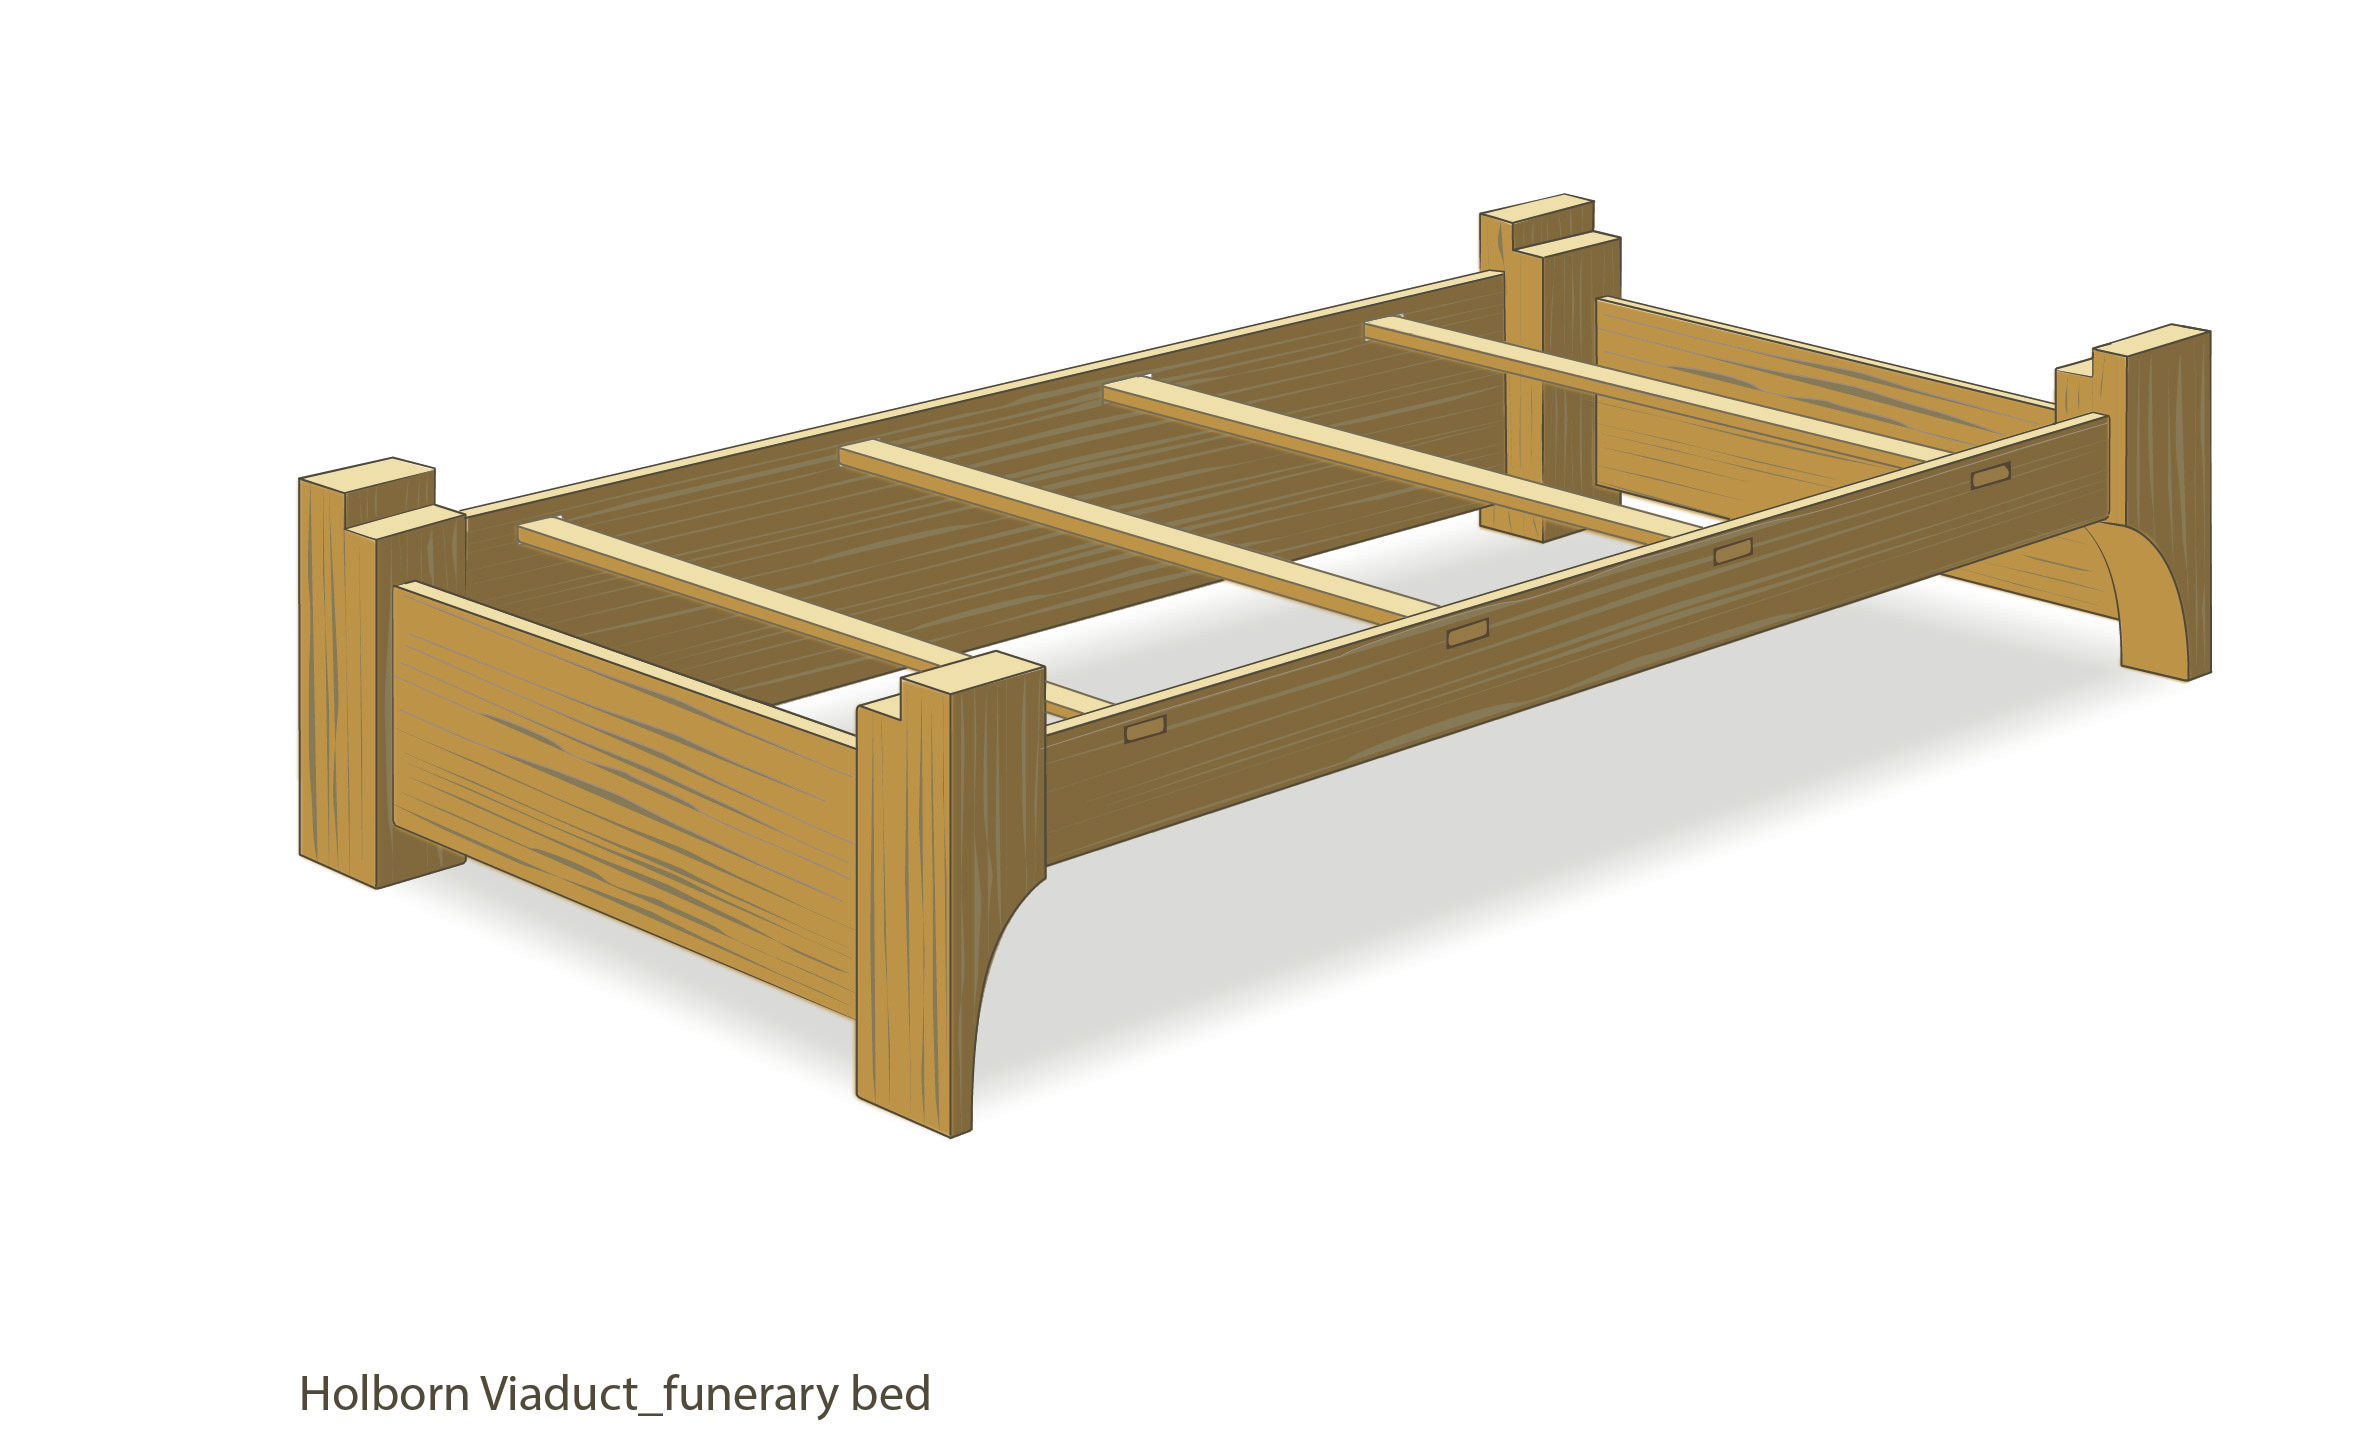 Das Bett ist aus hochwertigem Eichenholz gefertigt und hätte getragen werden können